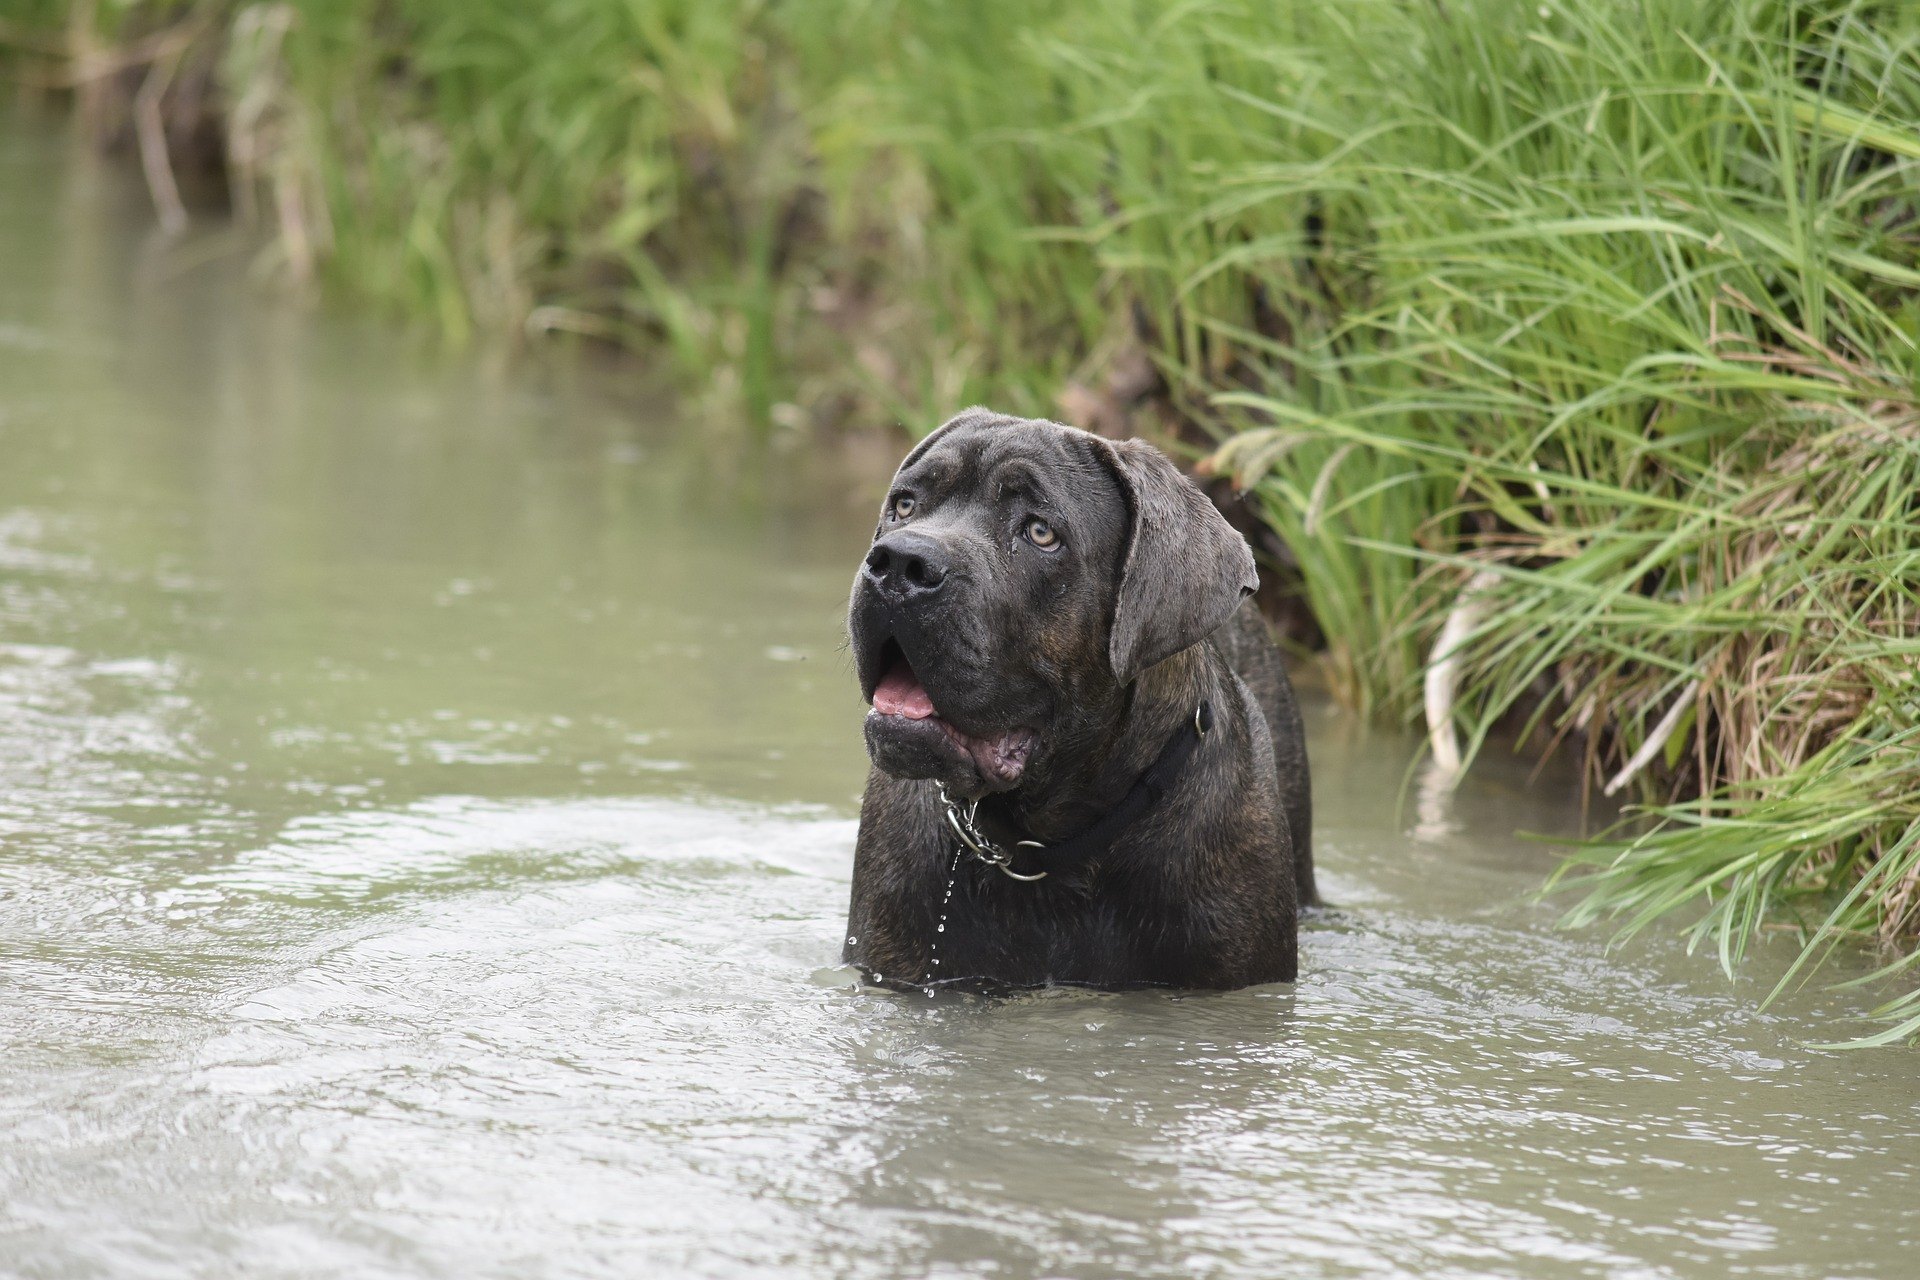 Cane corso je strážny, strážny, stopovací a policajný pes. Napriek svojej veľkej veľkosti má mimoriadne jemnú a vernú povahu.